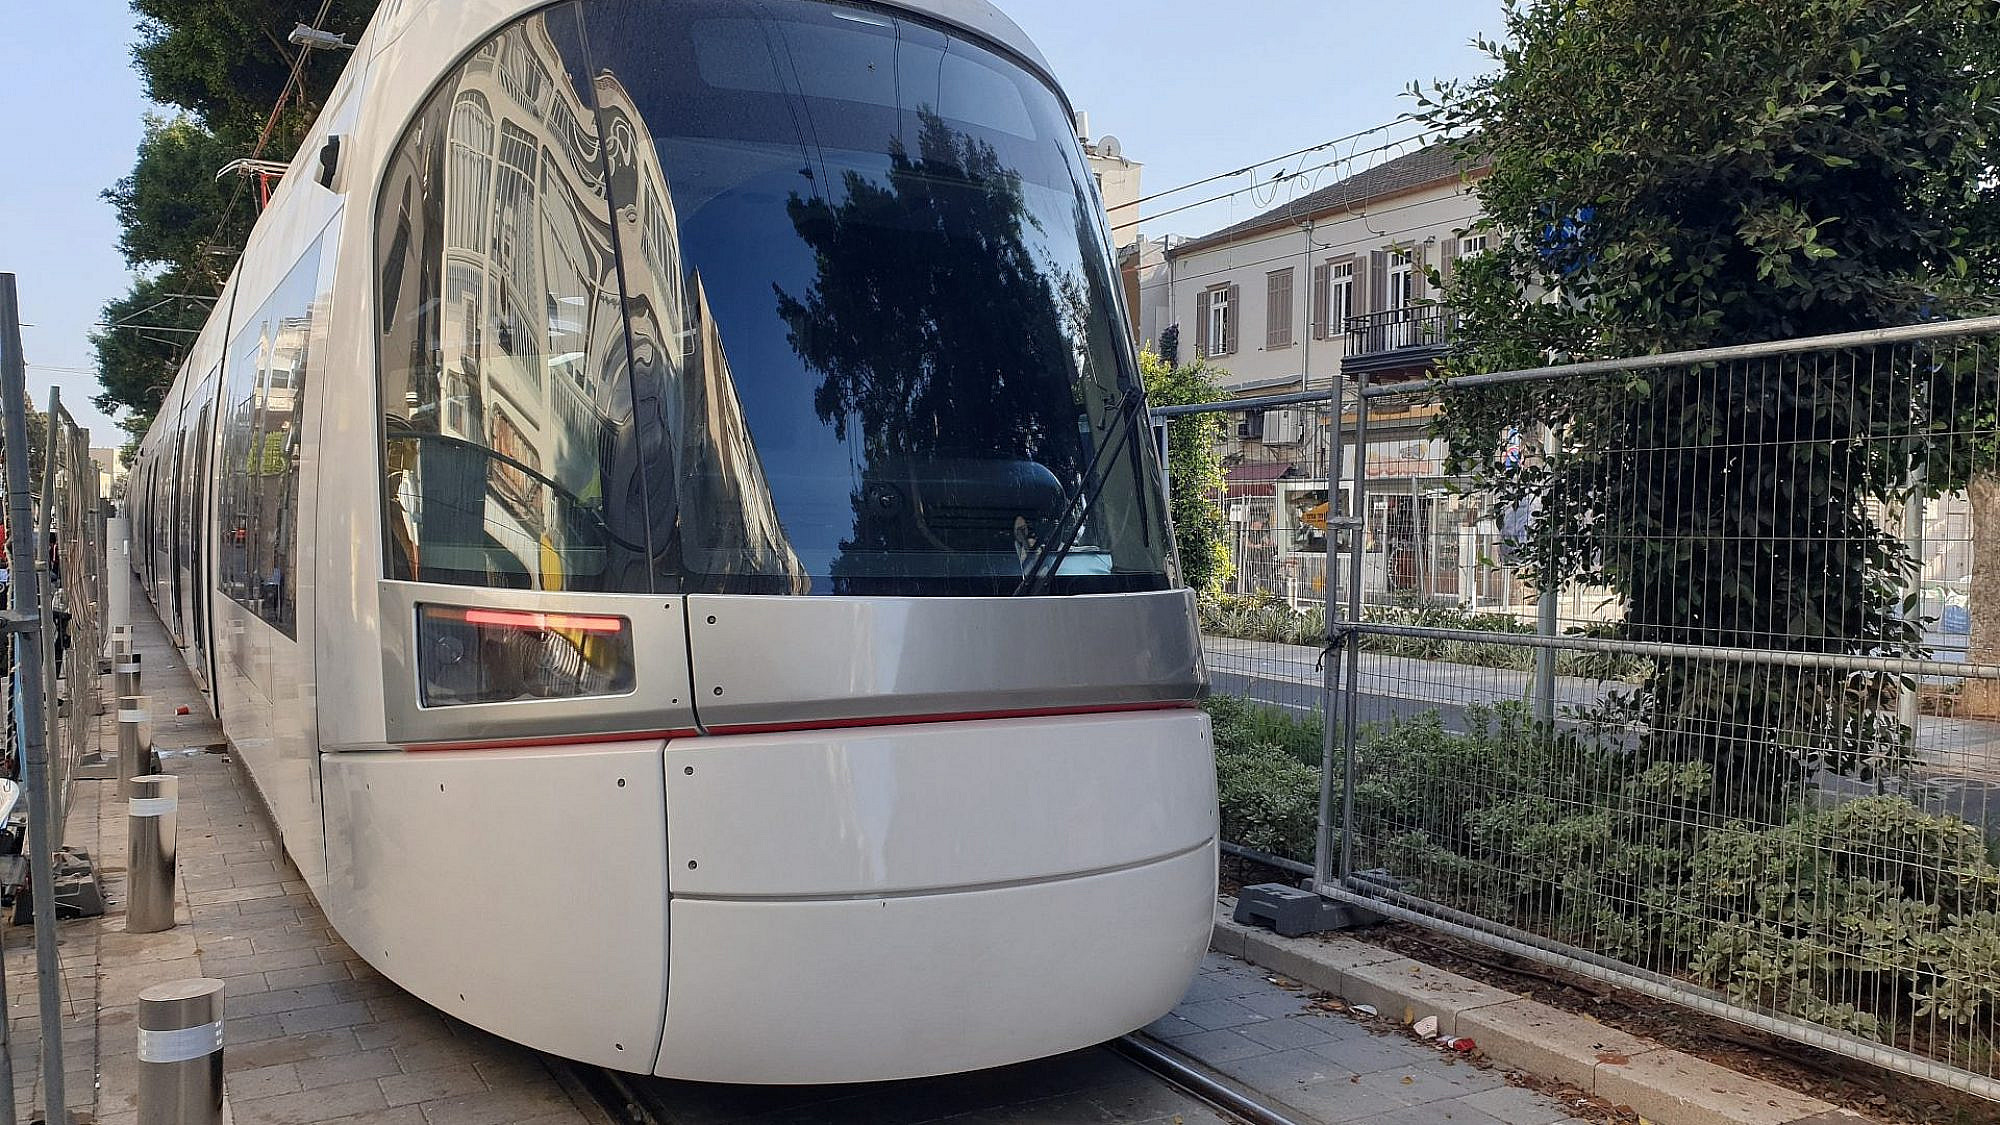 עוד דחיה ועוד דחיה. הרכבת הקלה בנסיעת מבחן בשדרות ירושלים (צילום: שאטרסטוק)